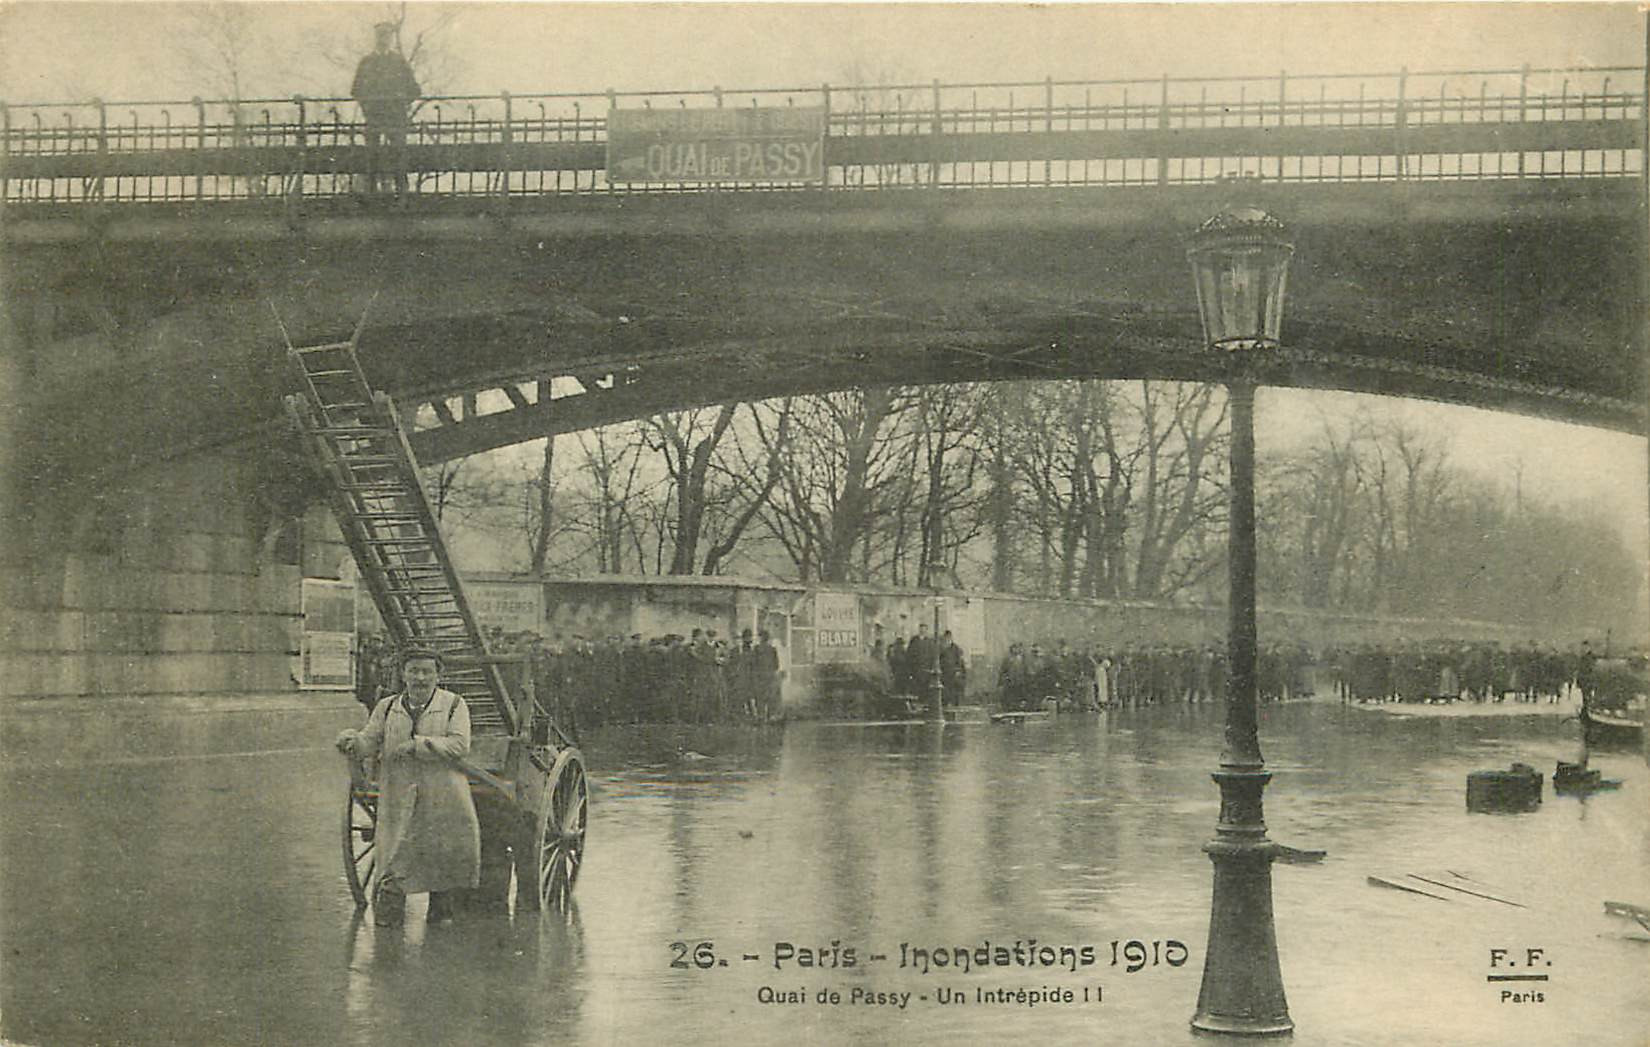 WW PARIS. Inondations Crue 1910. Un intrépide Quai de Passy